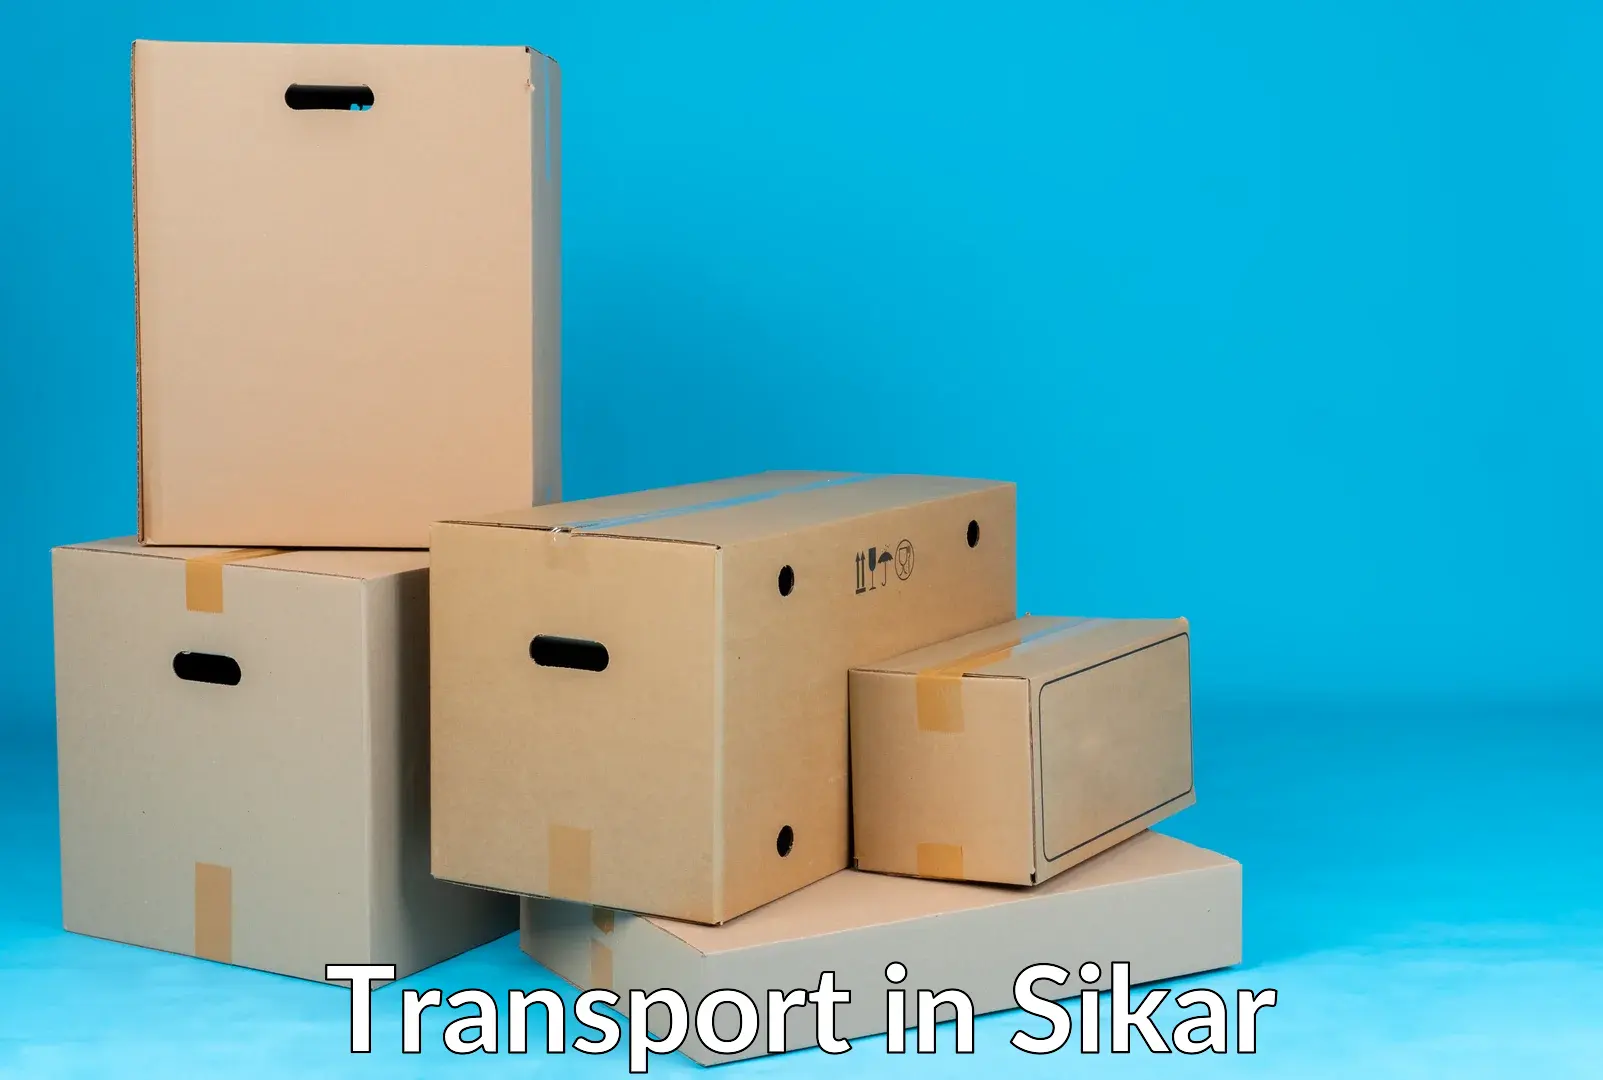 Nearby transport service in Sikar